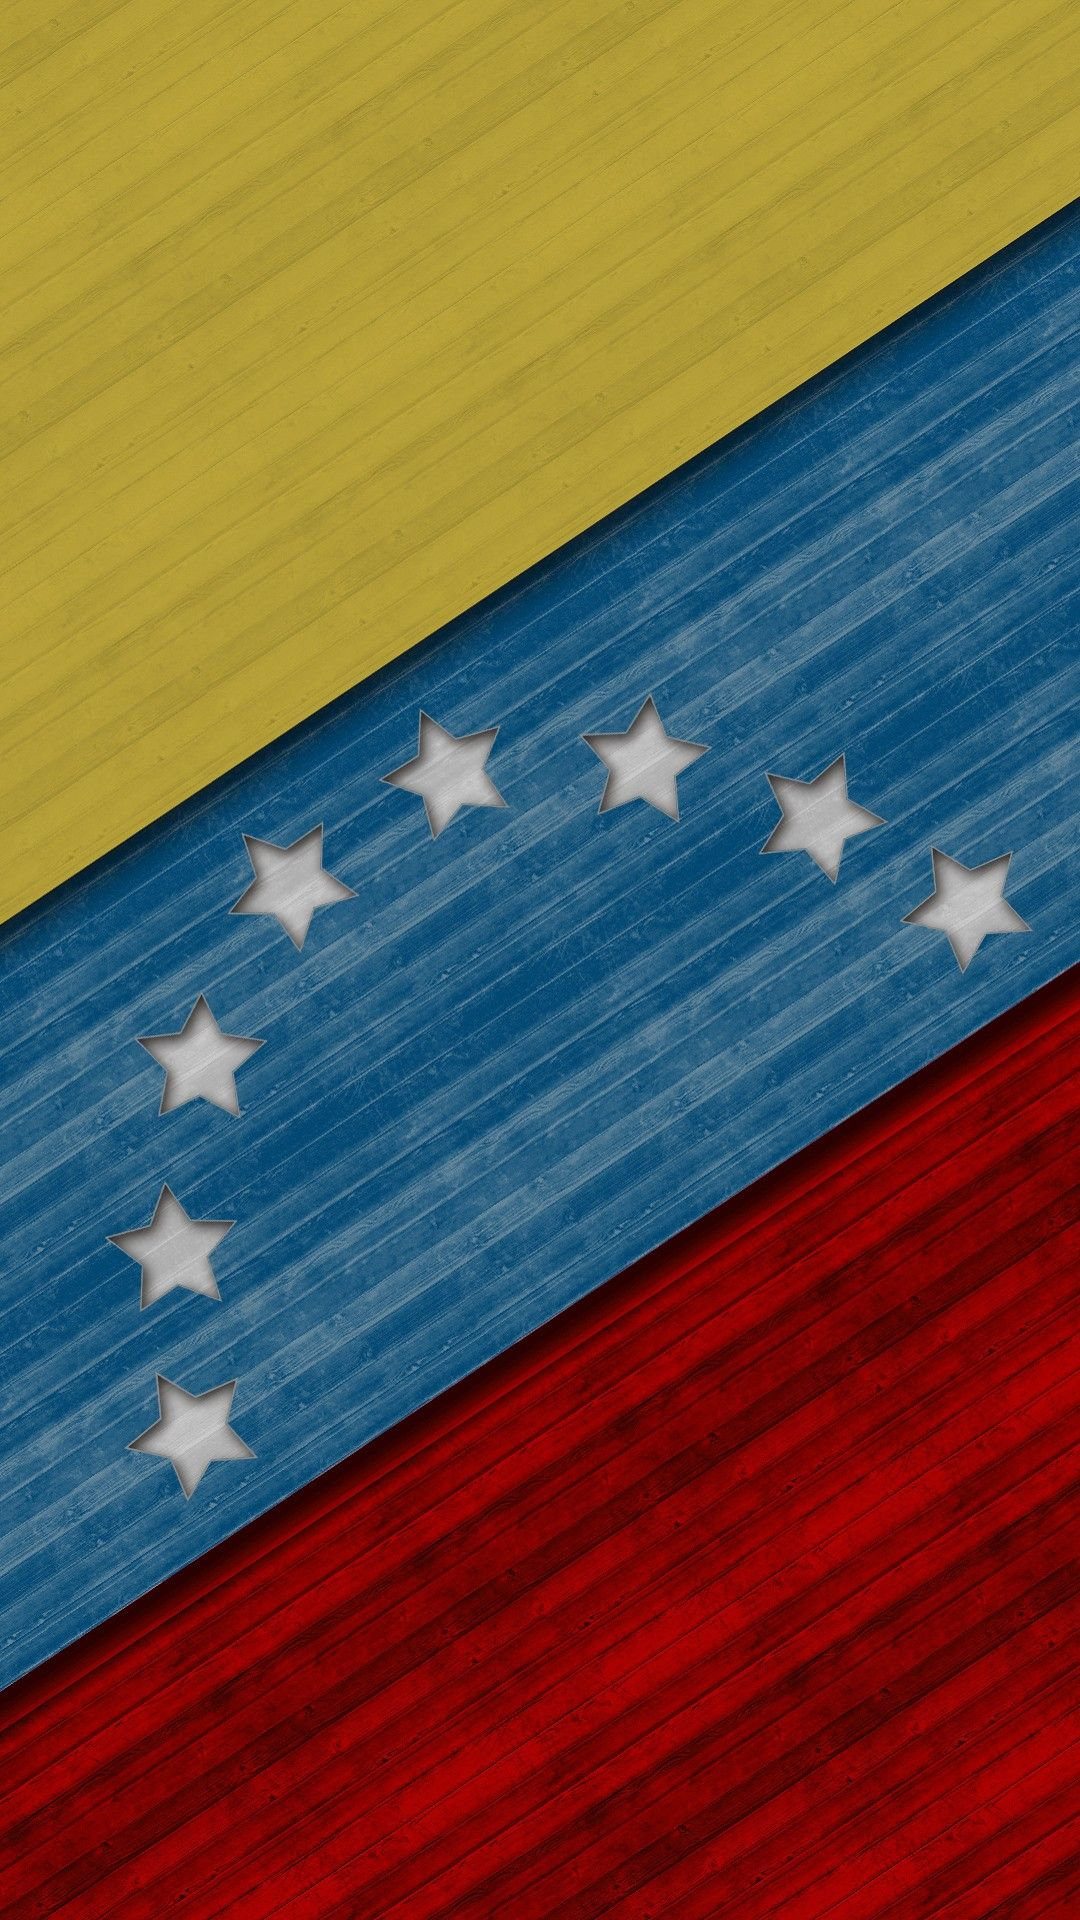 1080x1920 Bandera de Venezuela | Venezuela flag, Diy canvas art, Venezuela